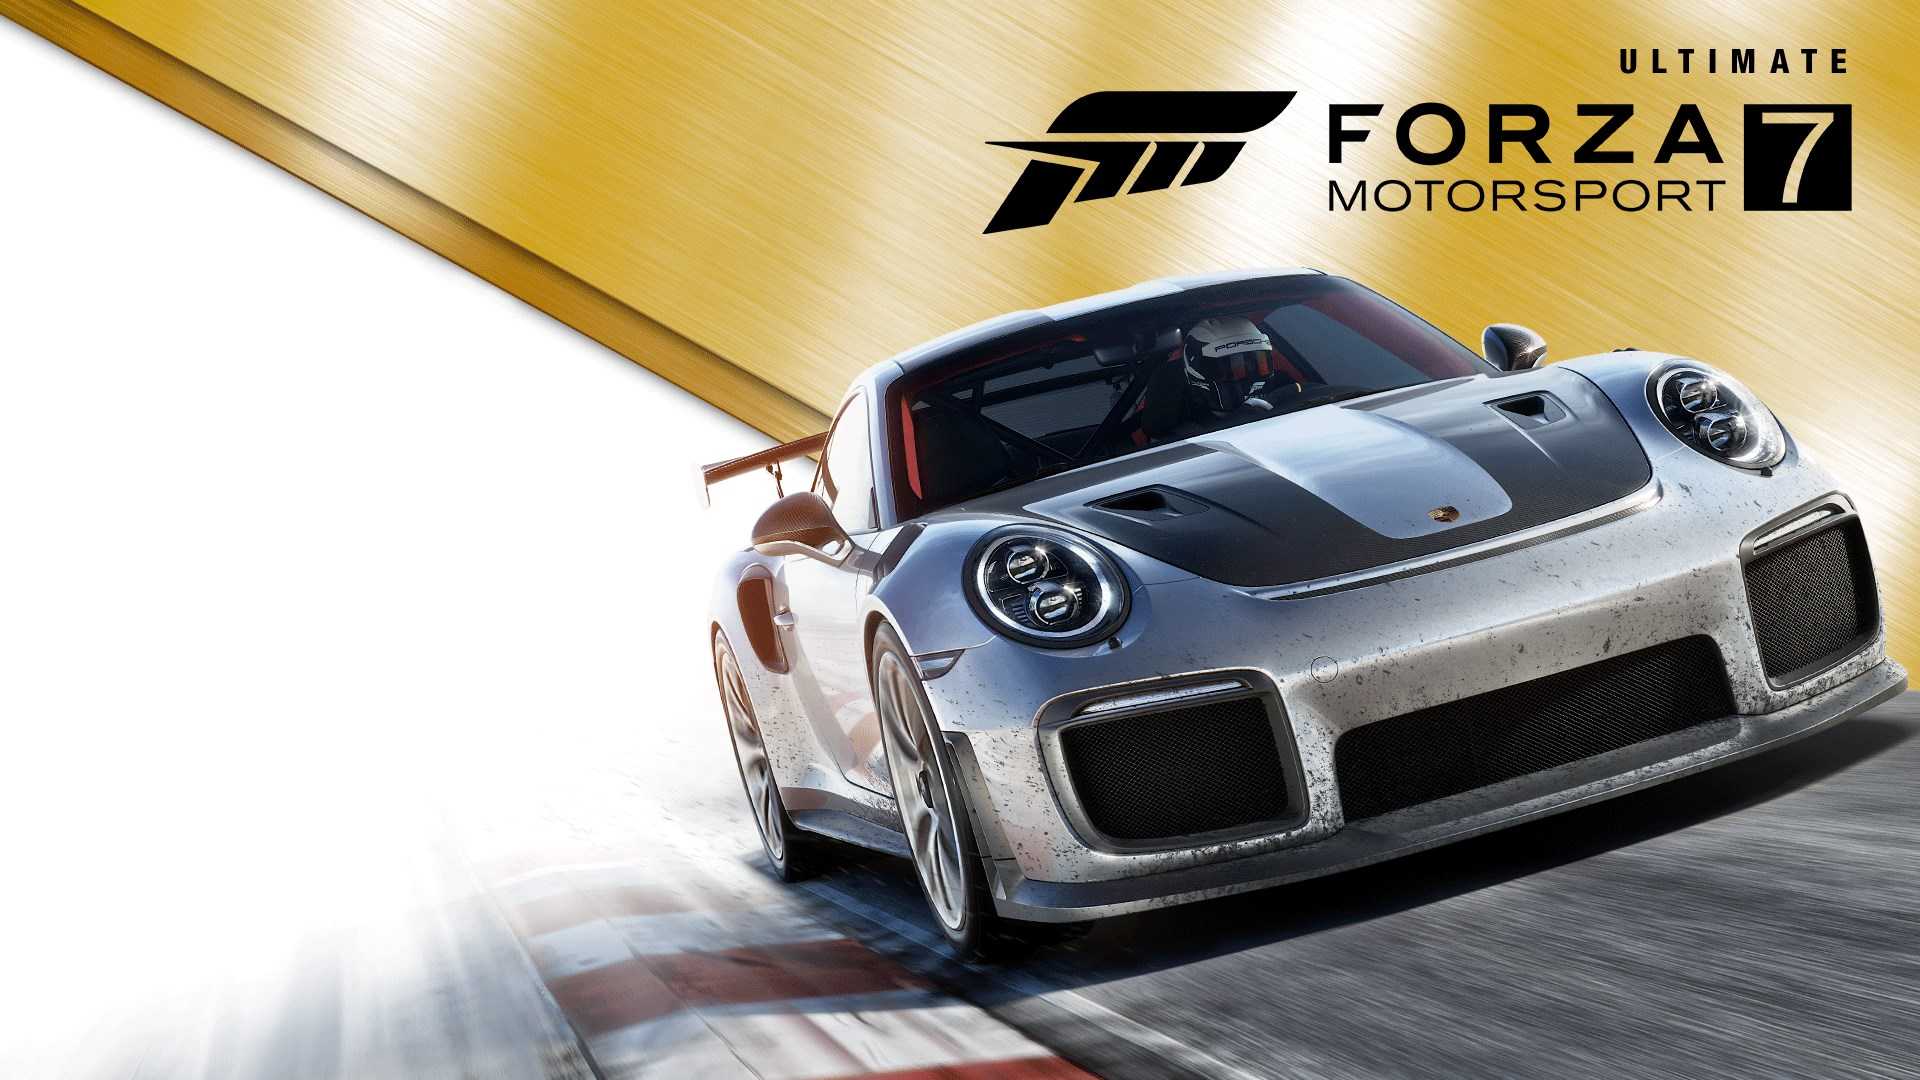  Forza Motorsport 7: ultimate-издание